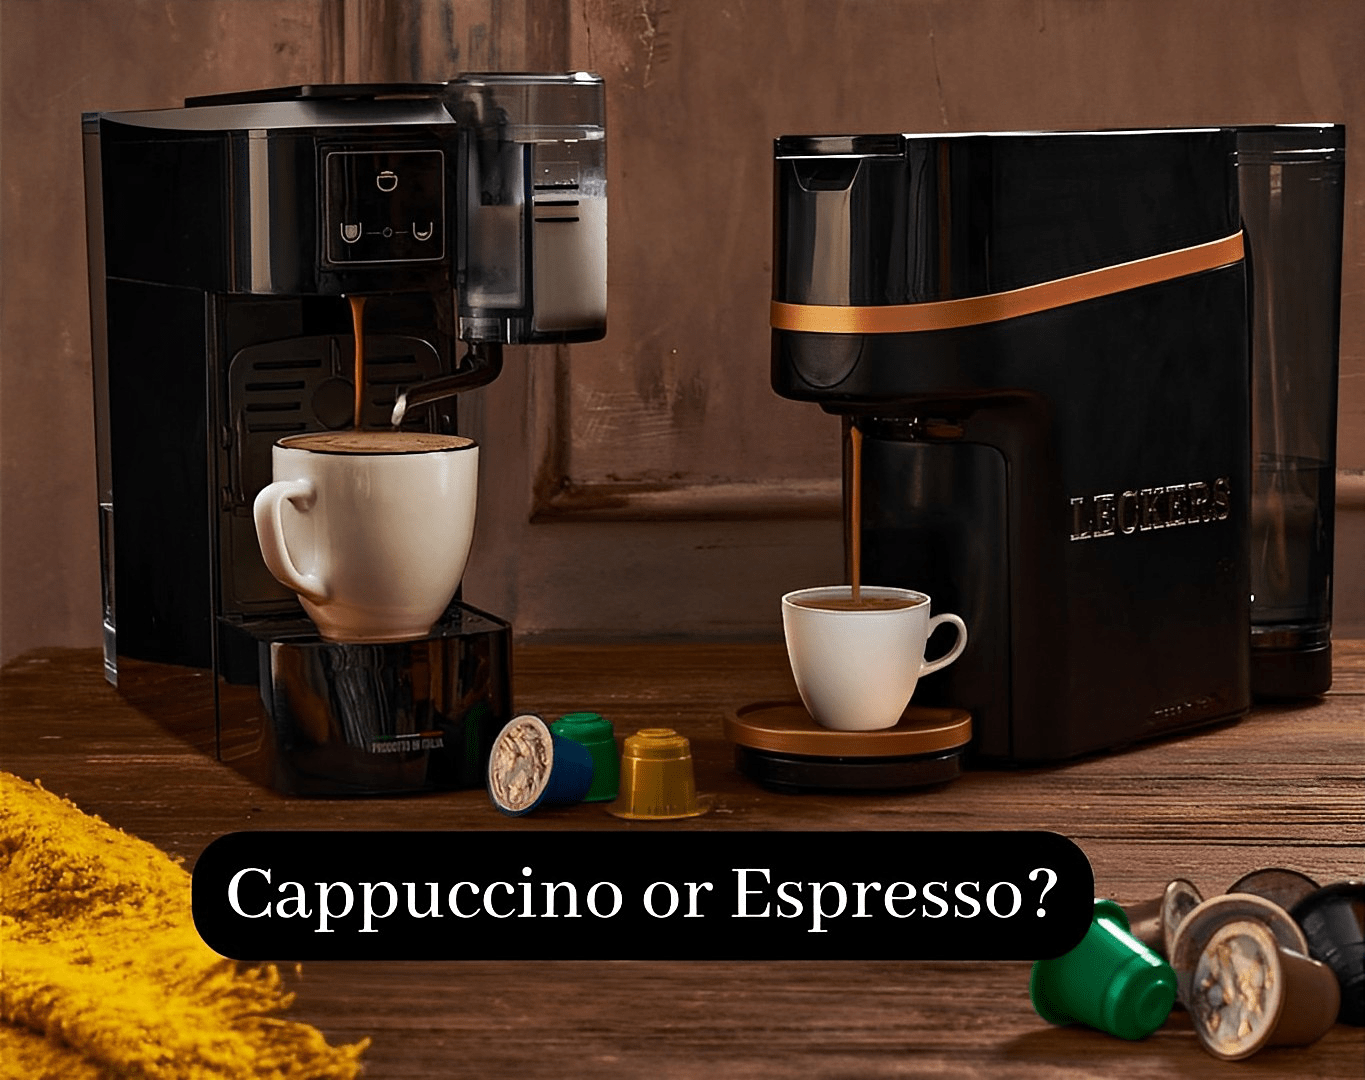 Café MÖVENPICK RISTRETTO Espresso capsules